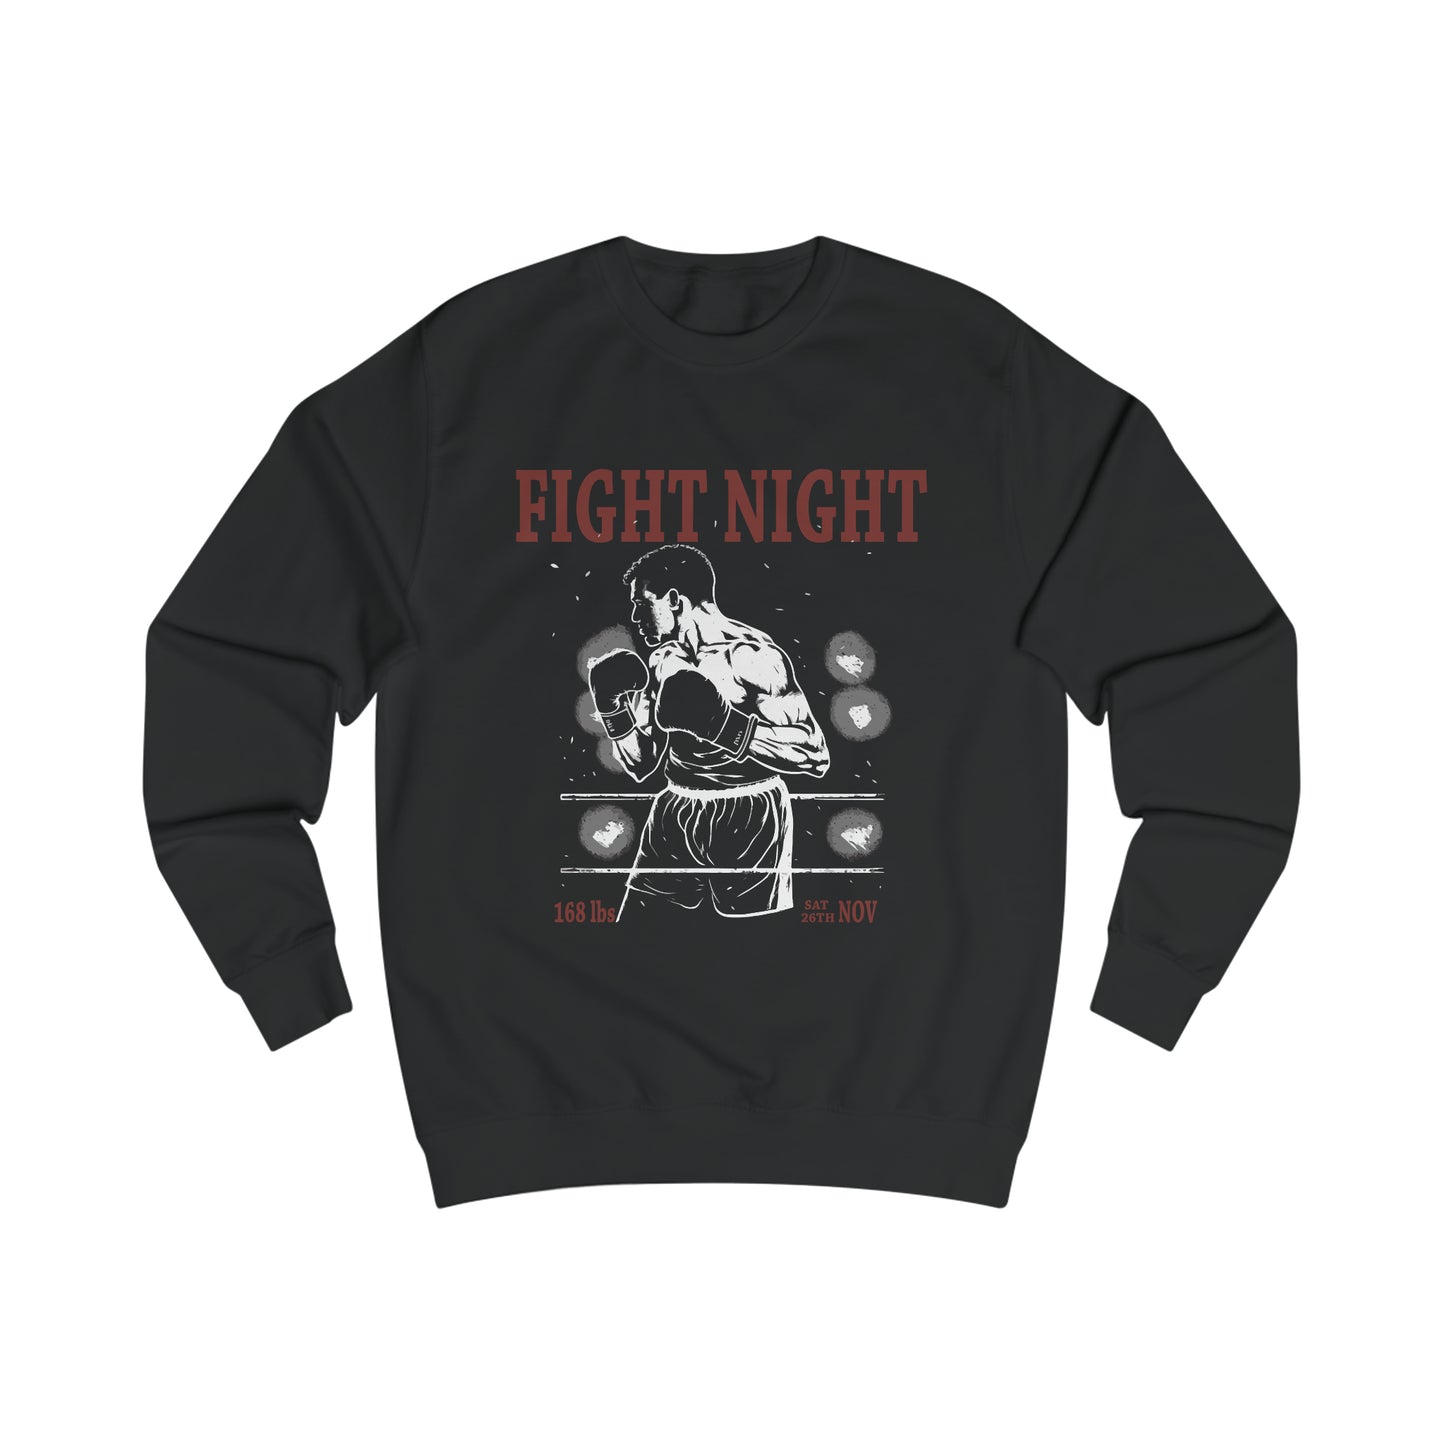 Fight Night Sweatshirt